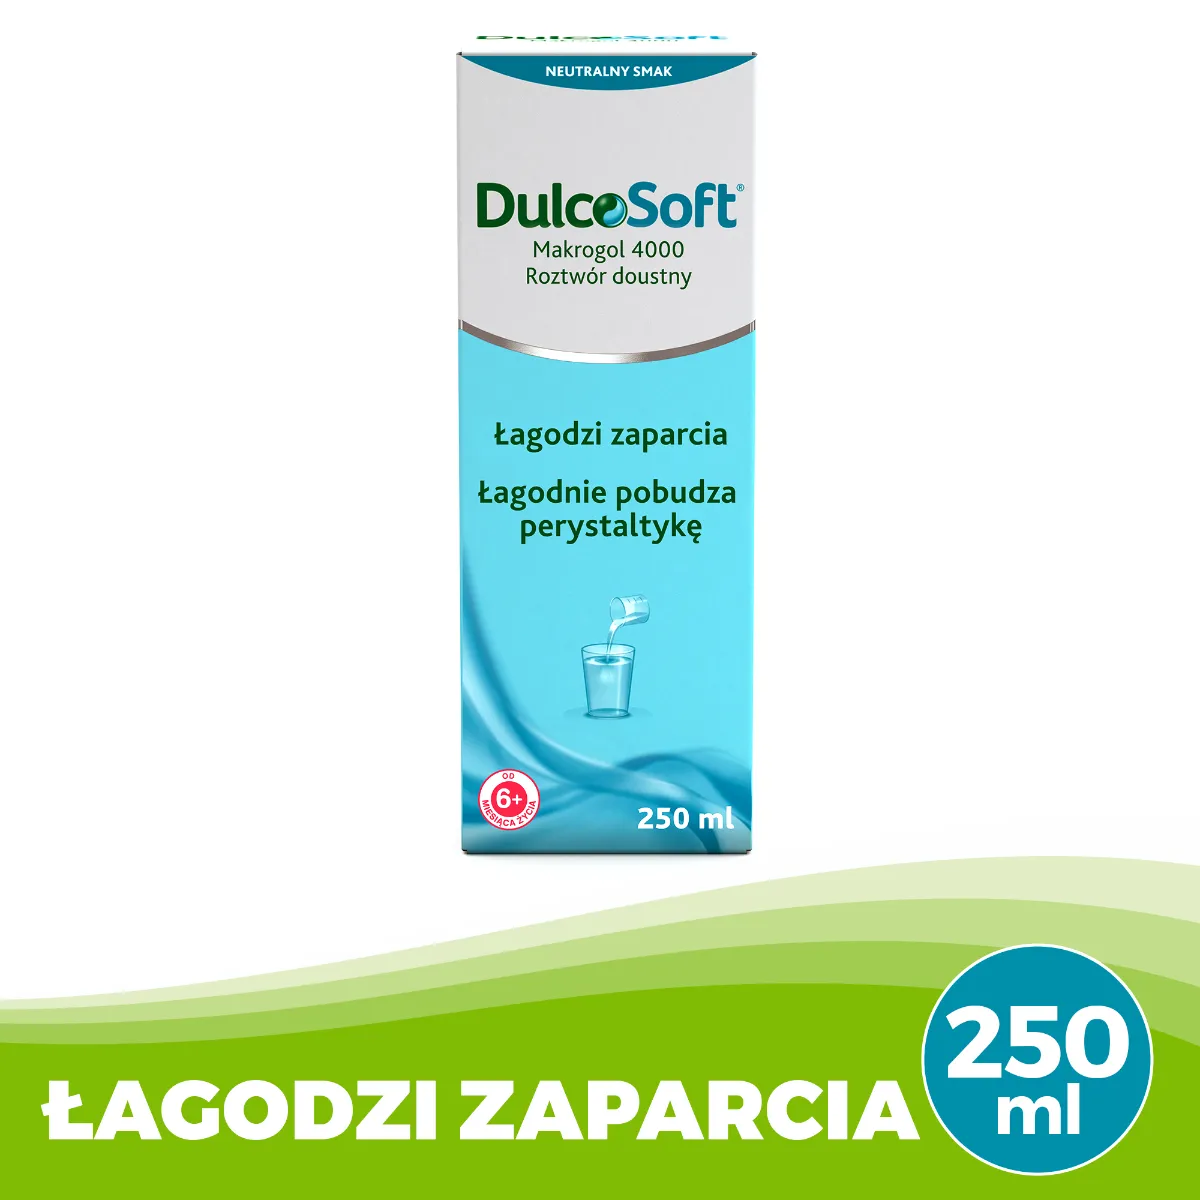 DulcoSoft Makrogol 4000, roztwór doustny, 250 ml 